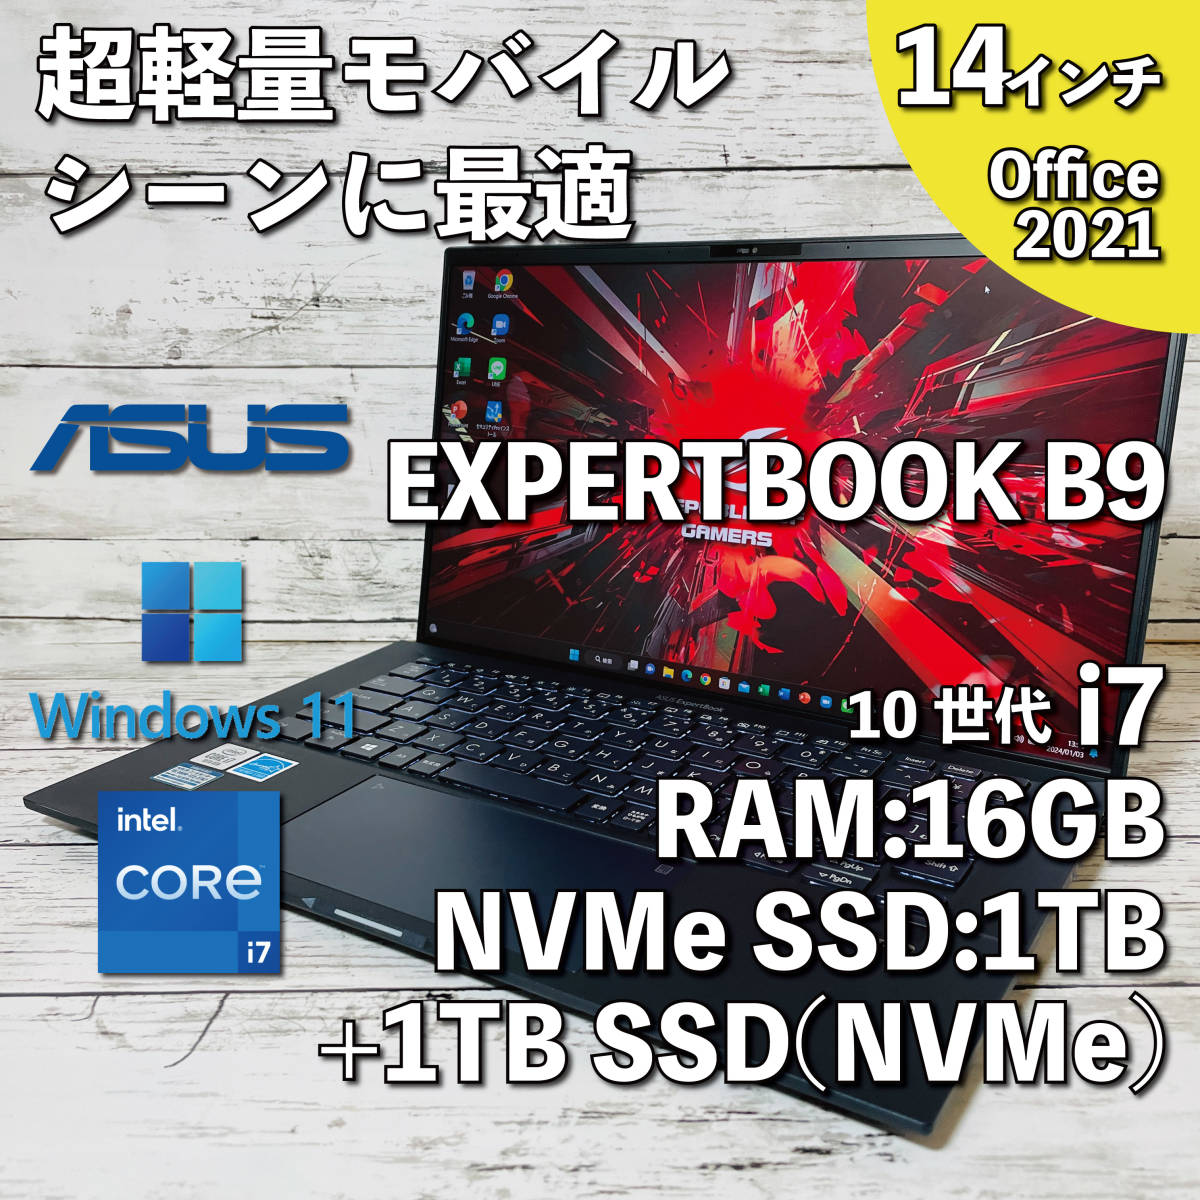 @245【超軽量モバイルシーンに最適】ASUS EXPERTBOOK B9/ Core i7-10510U/ メモリ16GB/ 1TB SSD(NVMe)+1TBSSD(NVMe)/ 14インチ/ Office2021_画像1